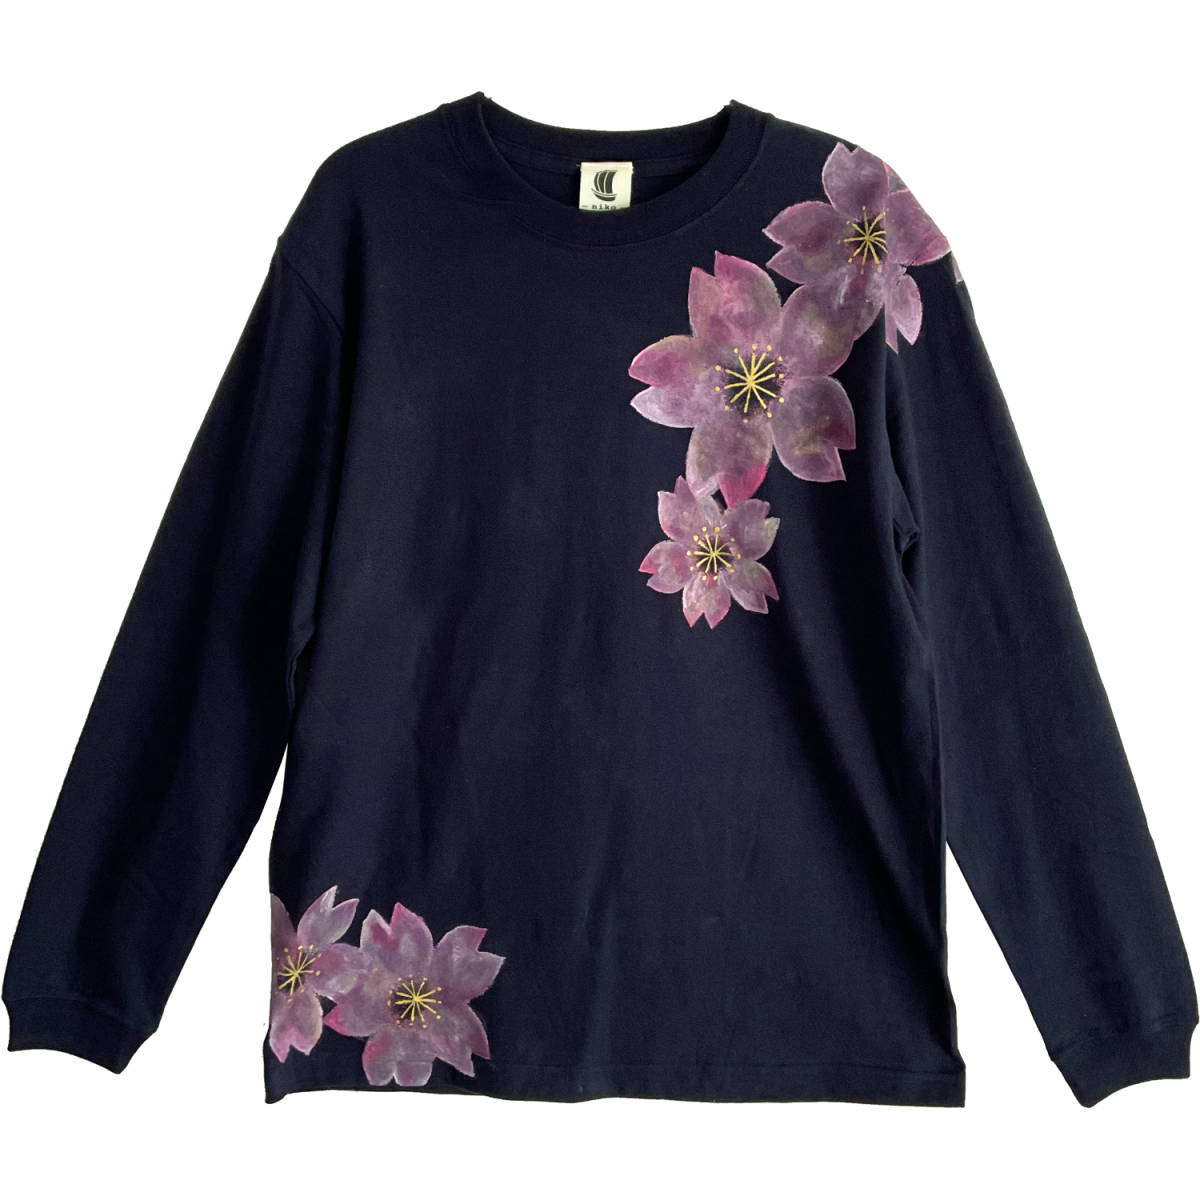 Camiseta con estampado de flor de cerezo bailando Talla S Azul Camiseta de manga larga dibujada a mano con mangas acanaladas Camiseta larga Estampado japonés floral Rosa, Camisetas, Manga larga, Talla pequeña